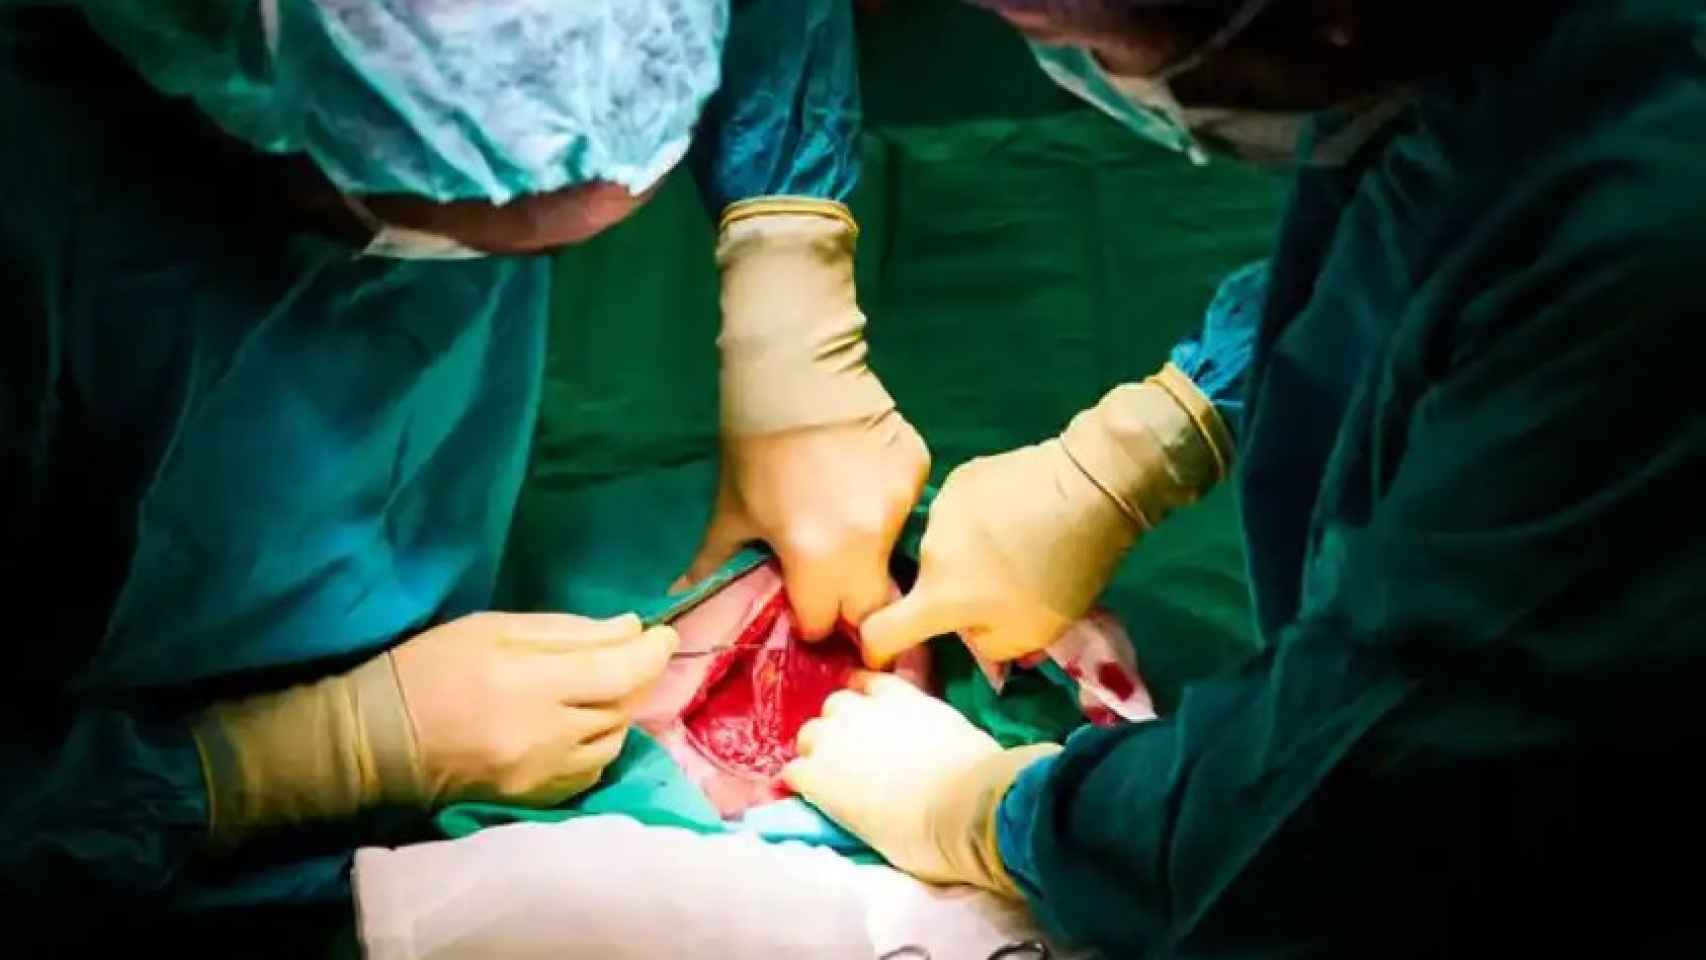 Una cirugía para introducir un implante de silicona para aumentar el pecho publicada en Crónica Global.